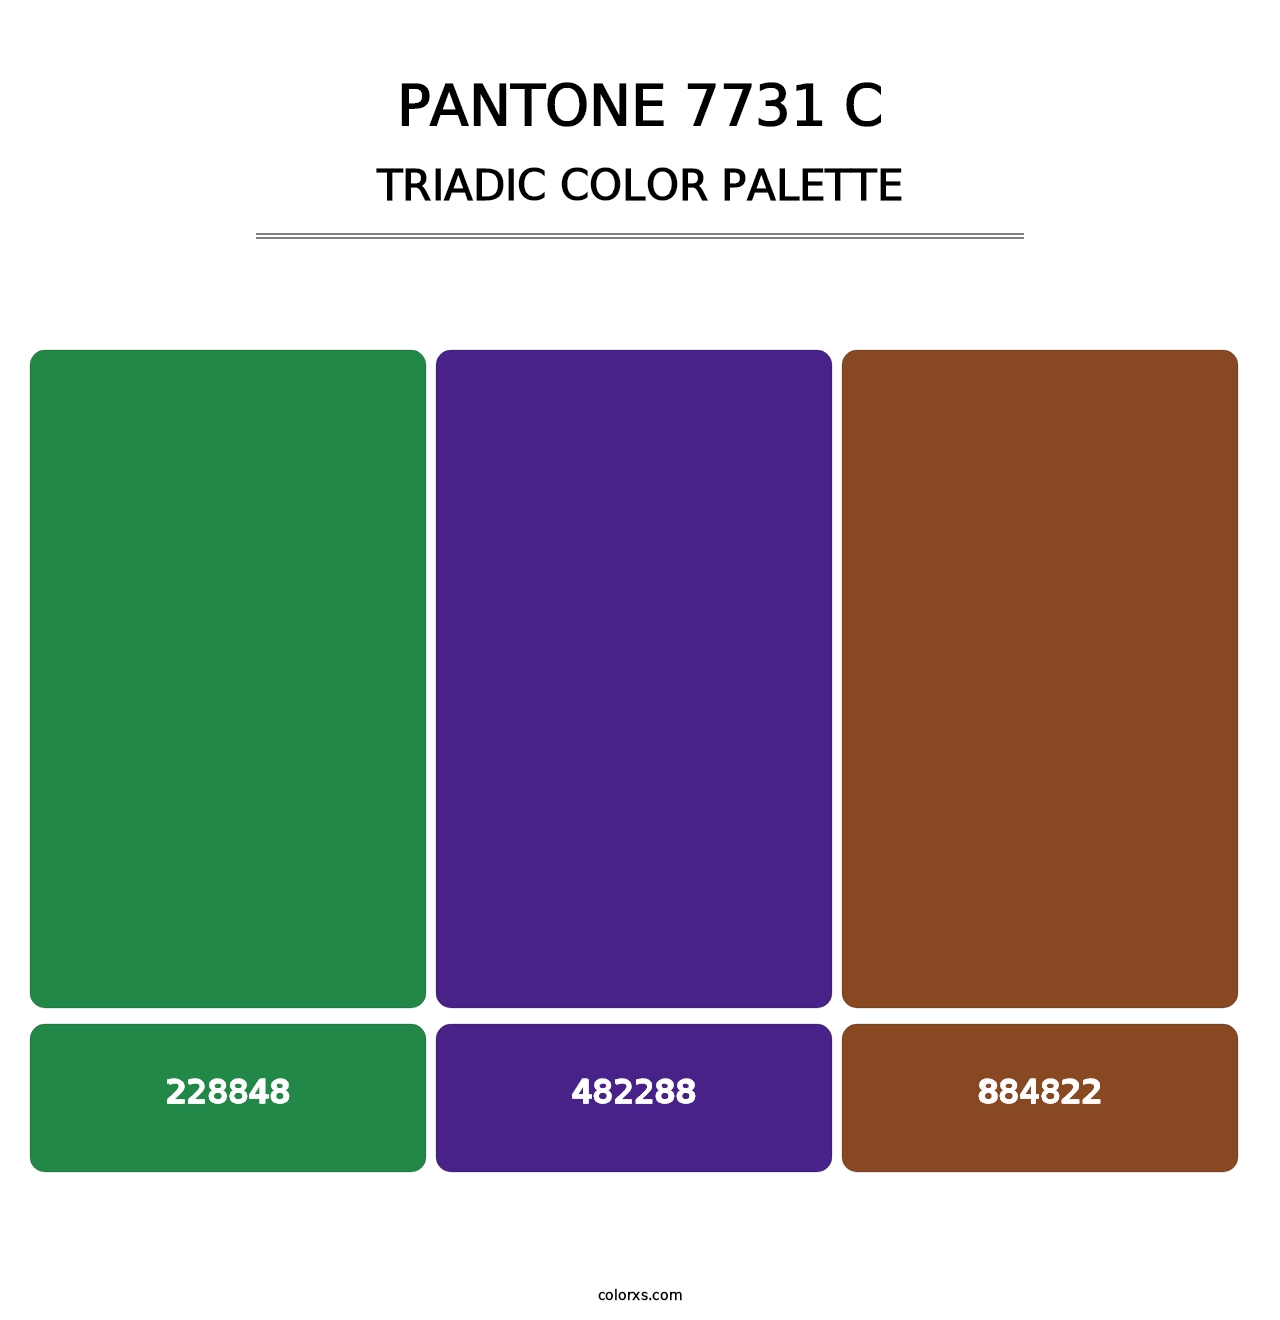 PANTONE 7731 C - Triadic Color Palette